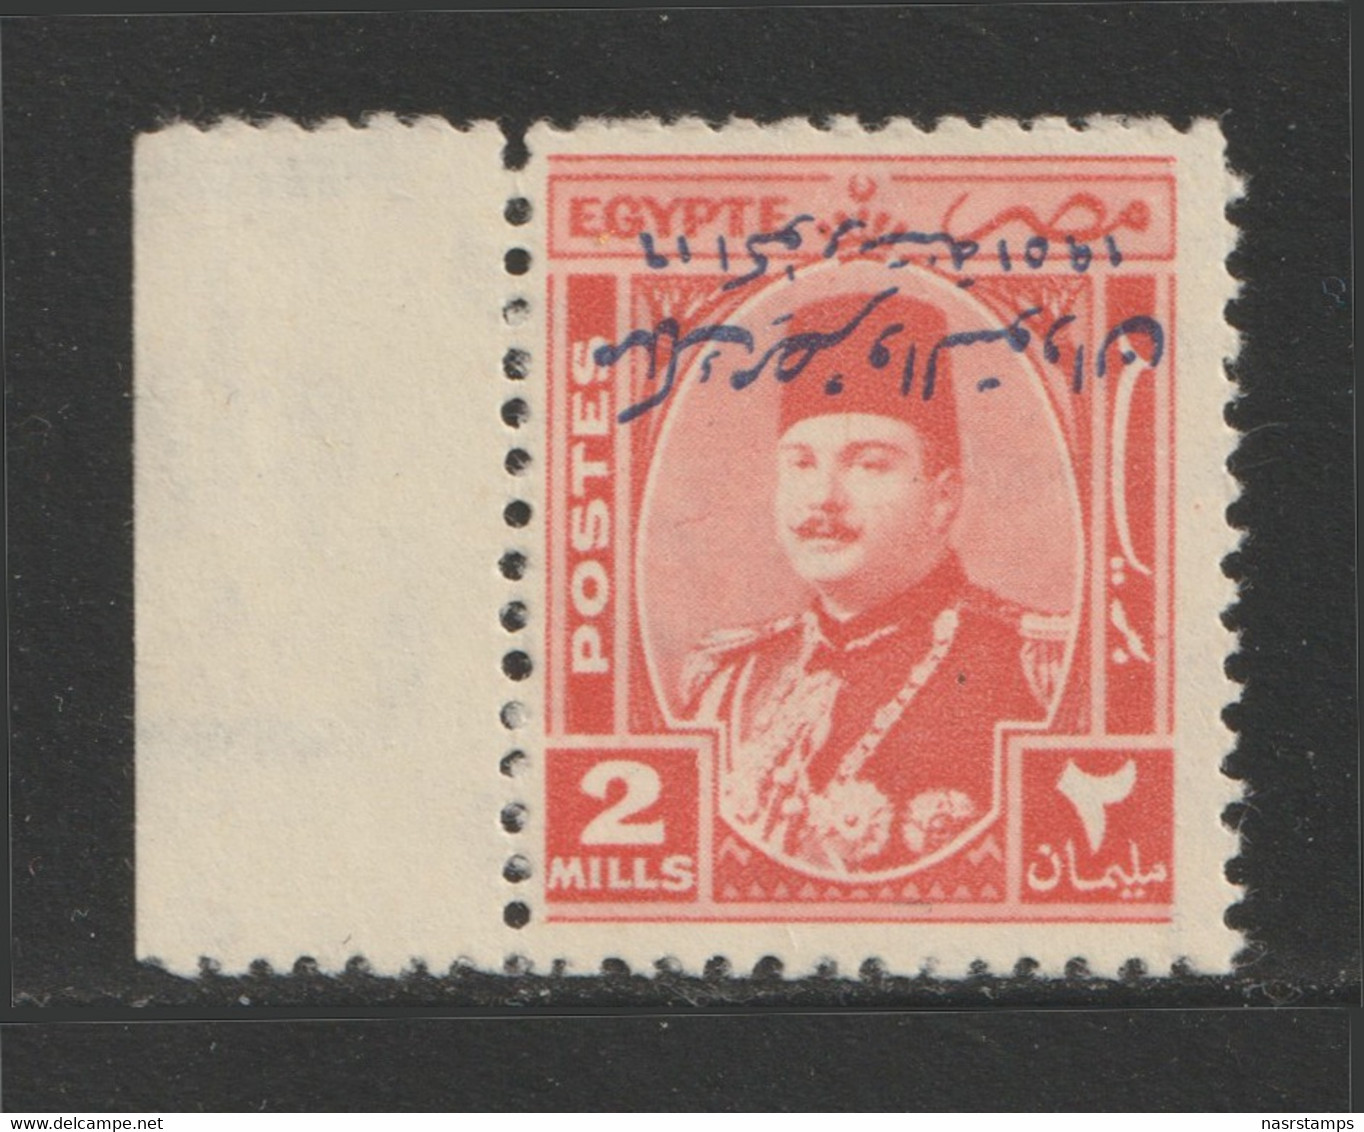 Egypt - 1945 - Rare - Inverted Overprint "Misr & Sudan" - ( King Farouk - 2m ) - MNH** - Ongebruikt